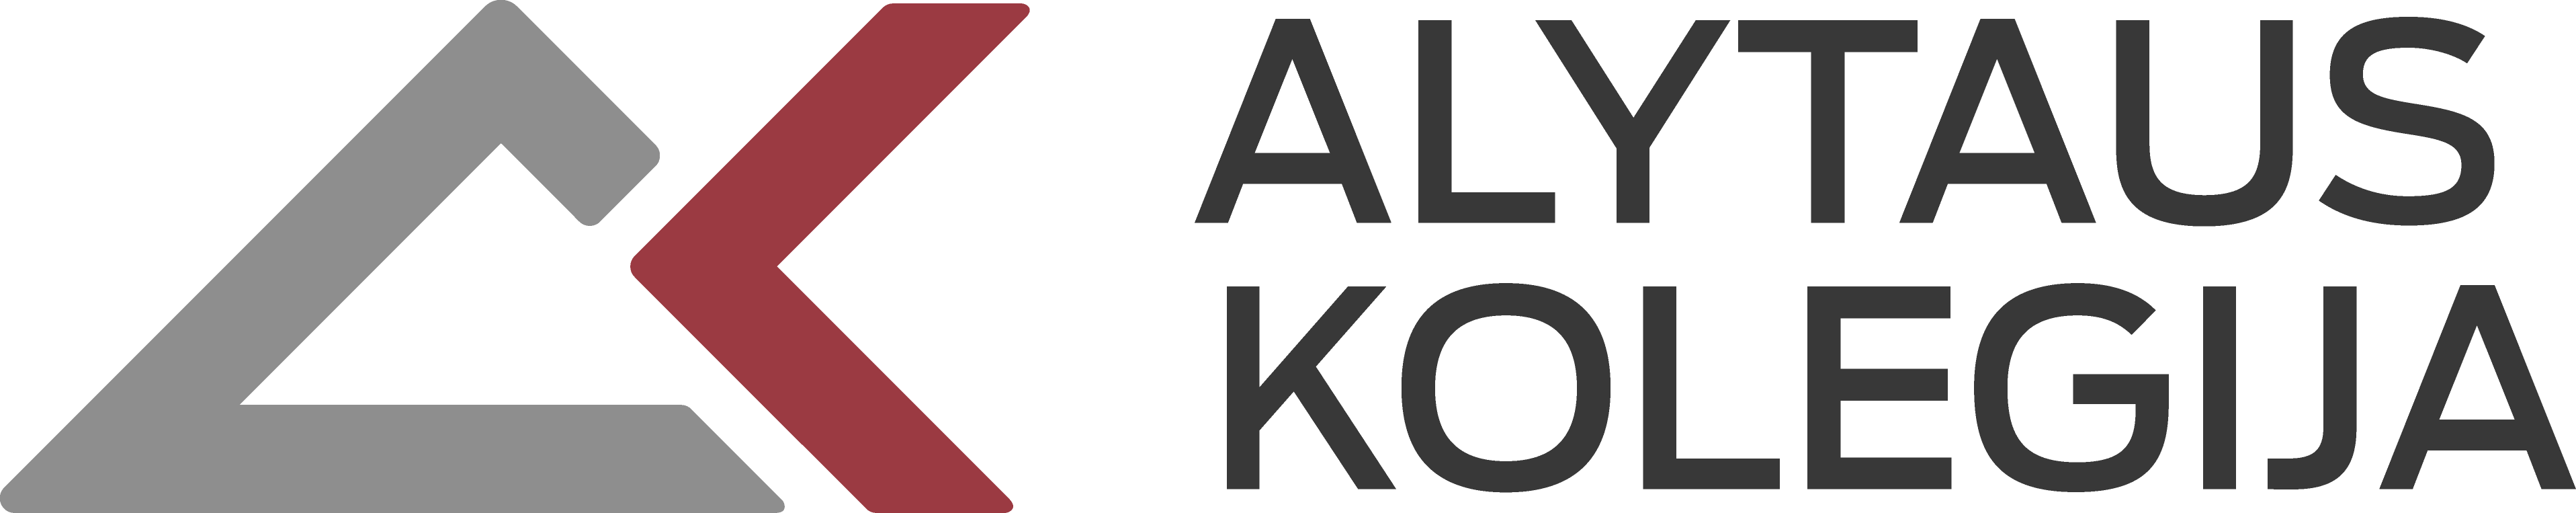 AK_logo